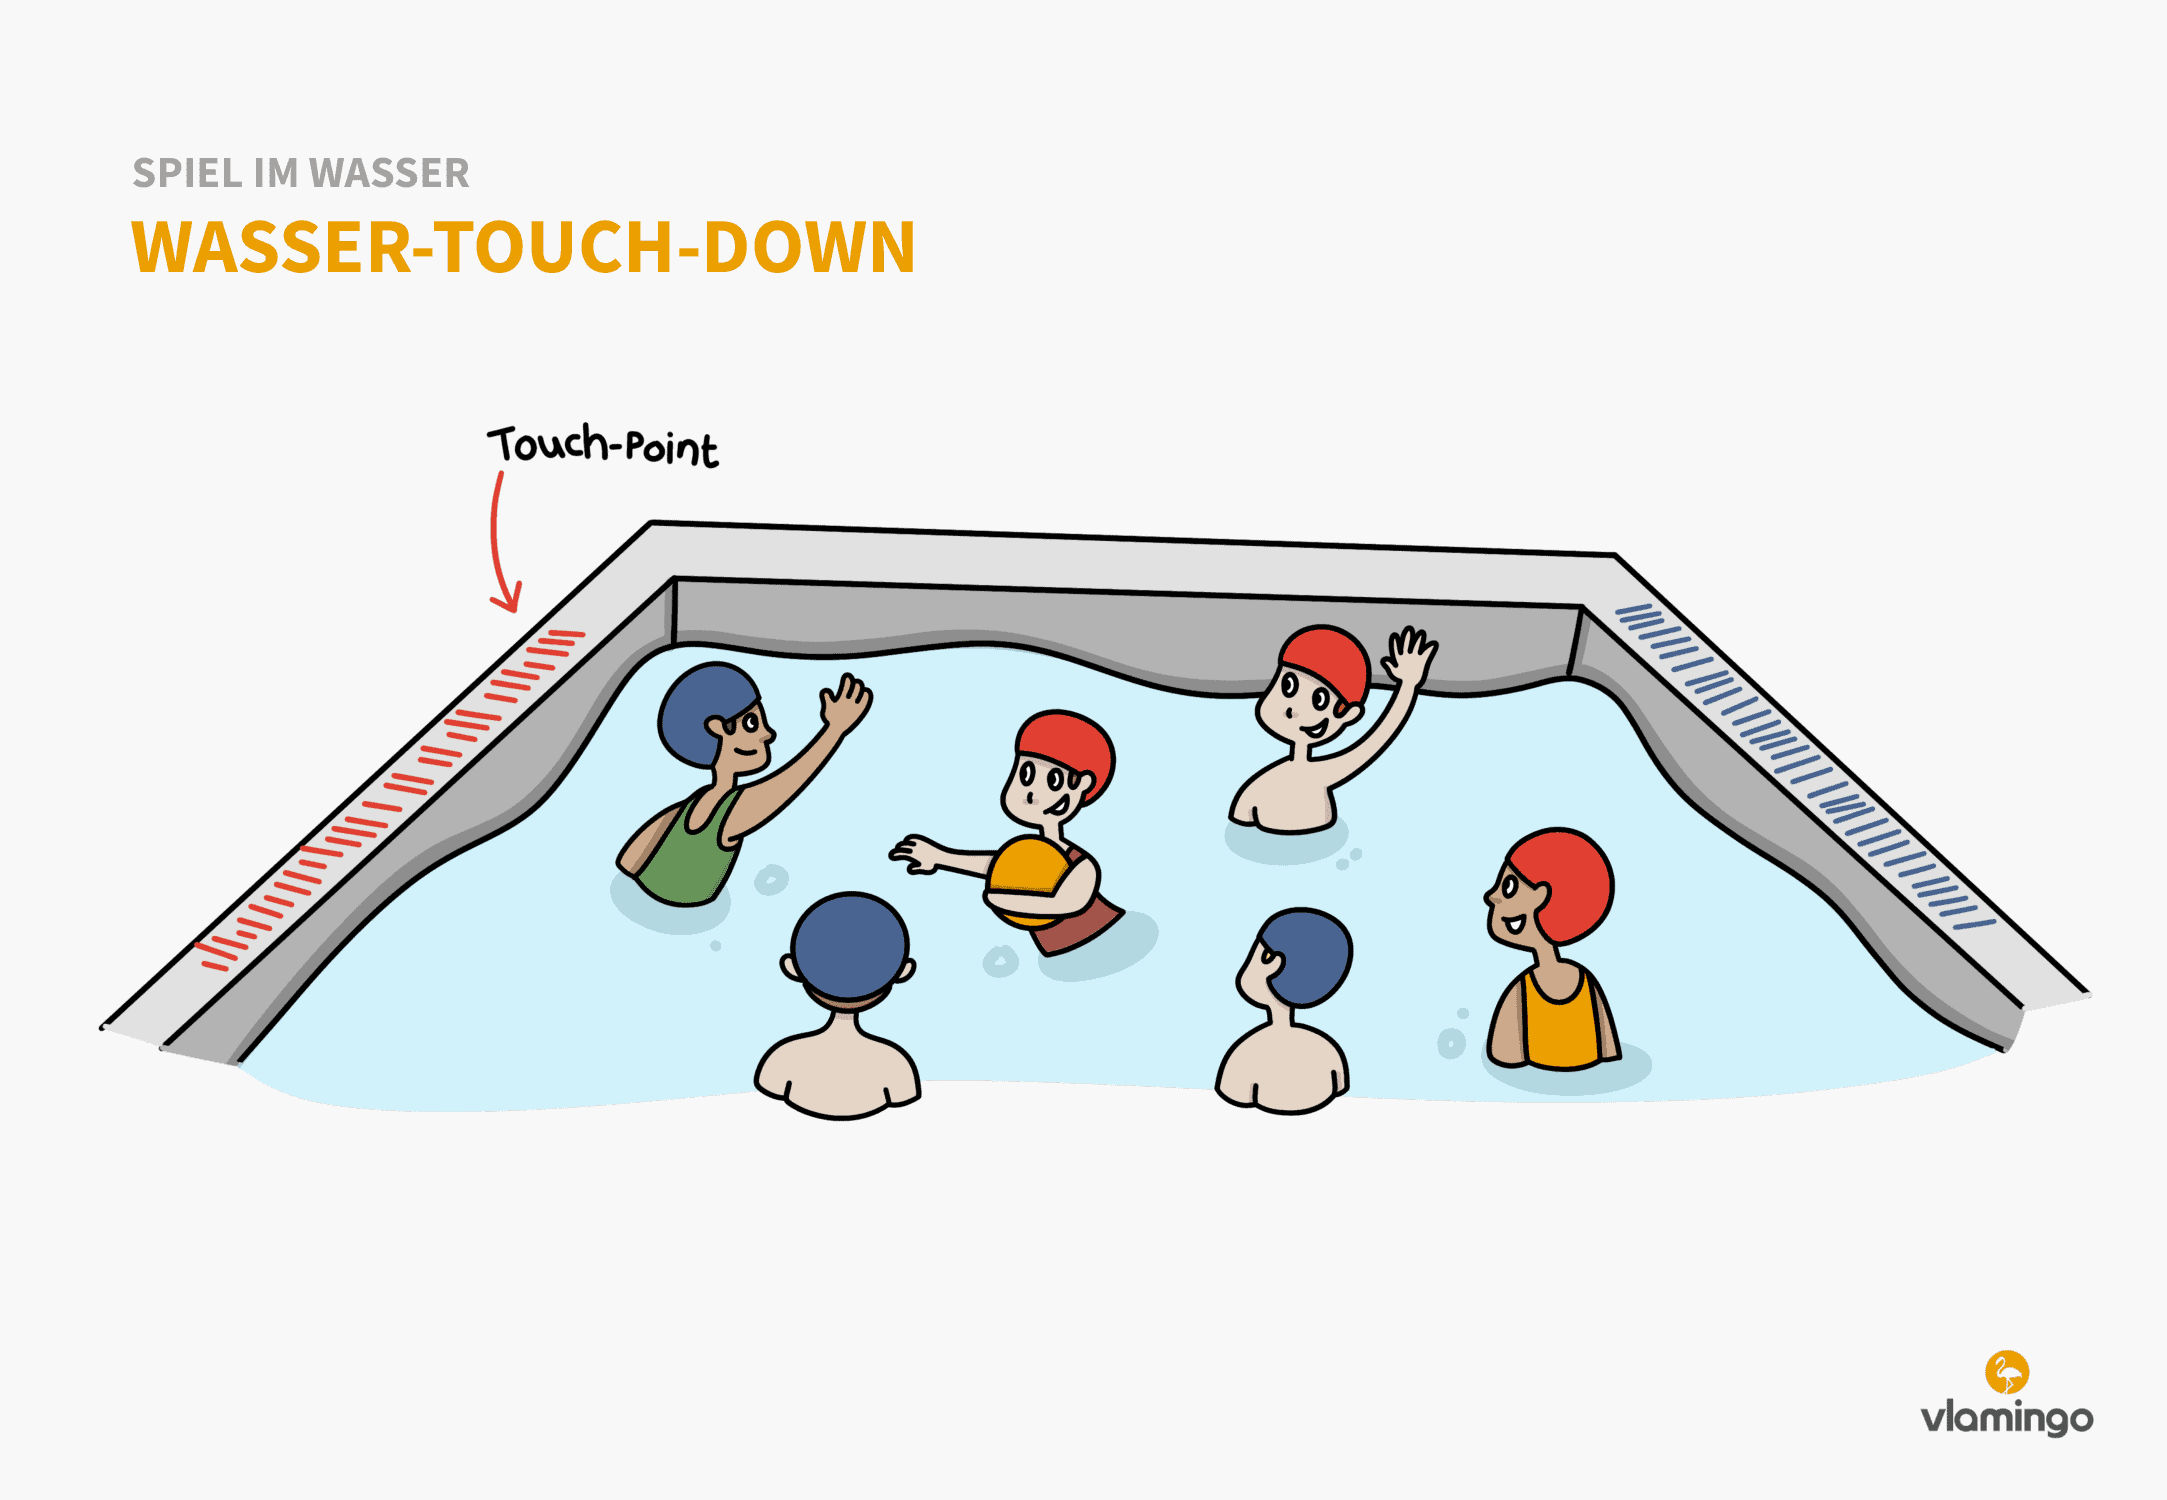 Wasser-Touch-Down - Spiel im Wasser - Schwimmspiel